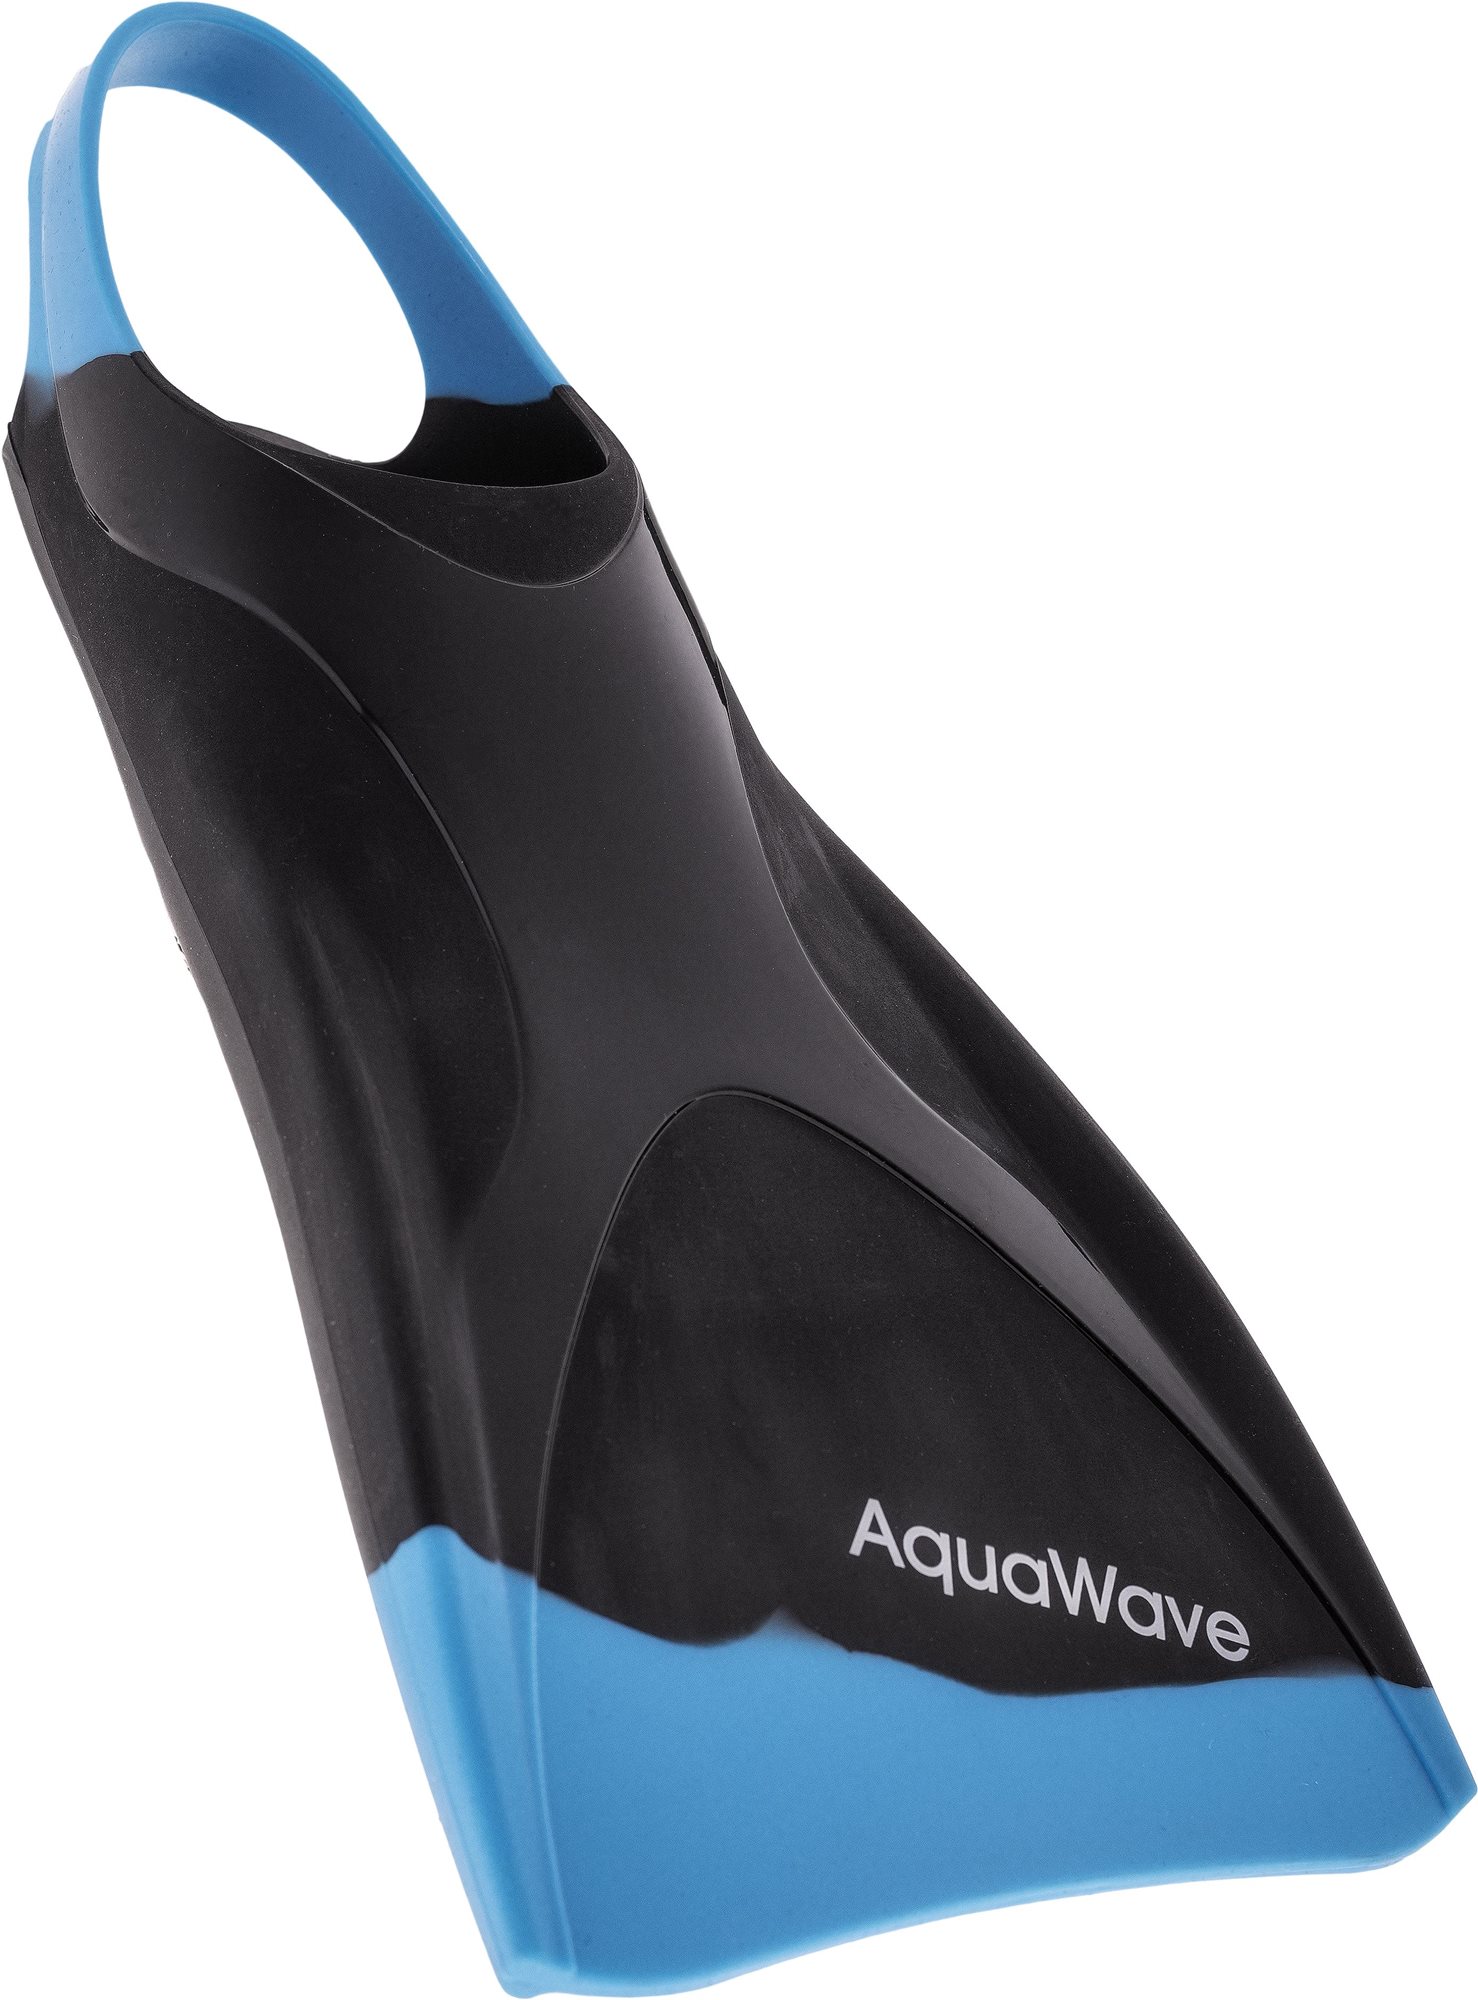 AquaWave Spina Fins 43-44